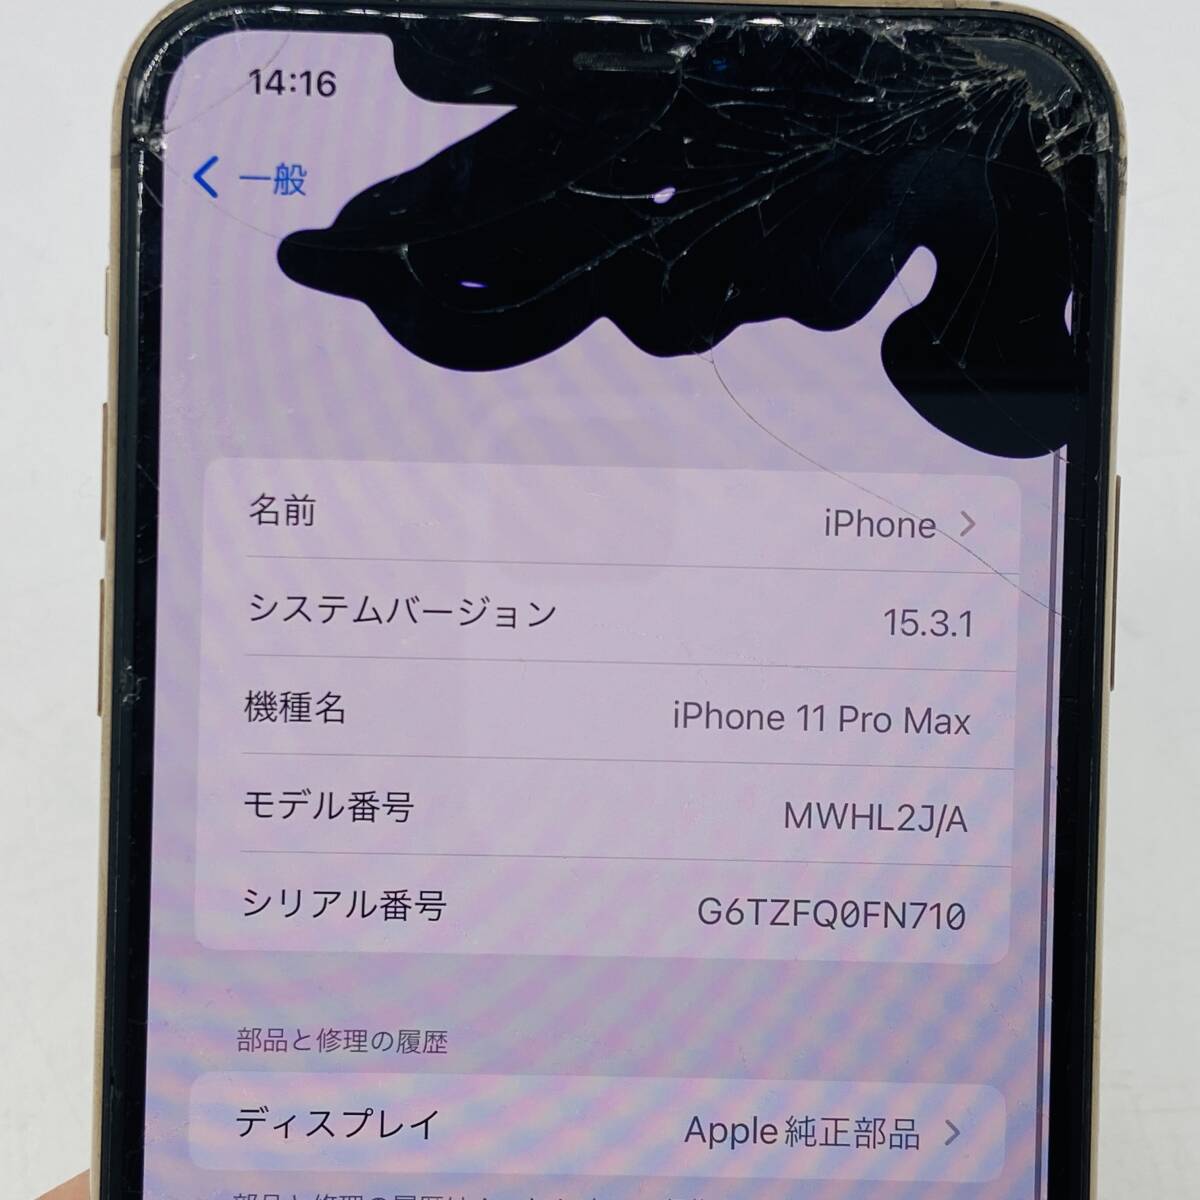 (26458)□iPhone 11 Pro Max MWHL2J/A 256GB ゴールド[au/Apple/スマートフォン端末] 中古品の画像6